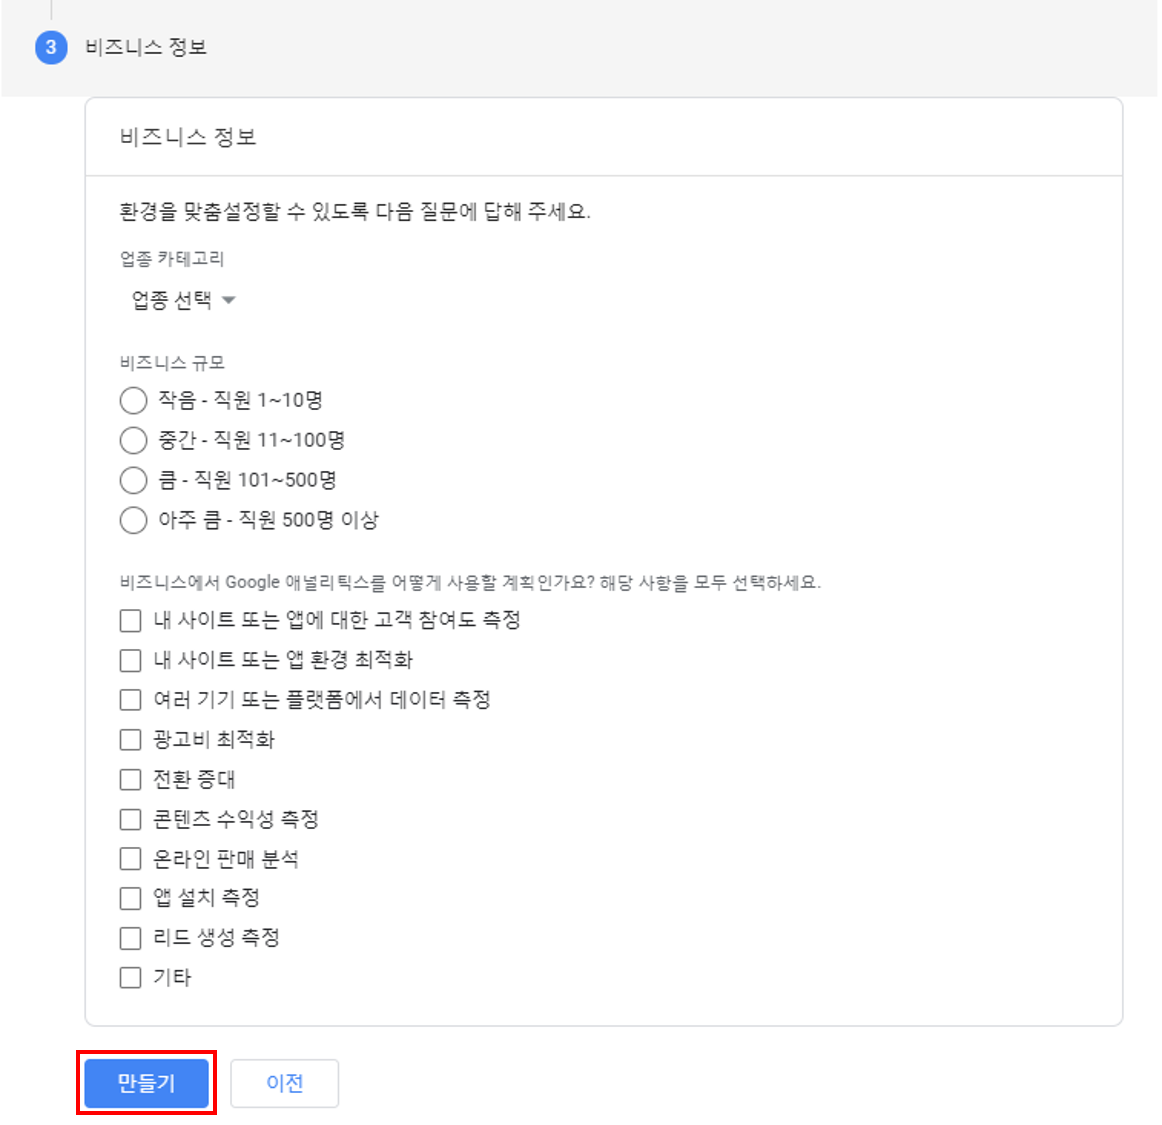 구글 애널리틱스 계정 생성 비즈니스 정보 입력